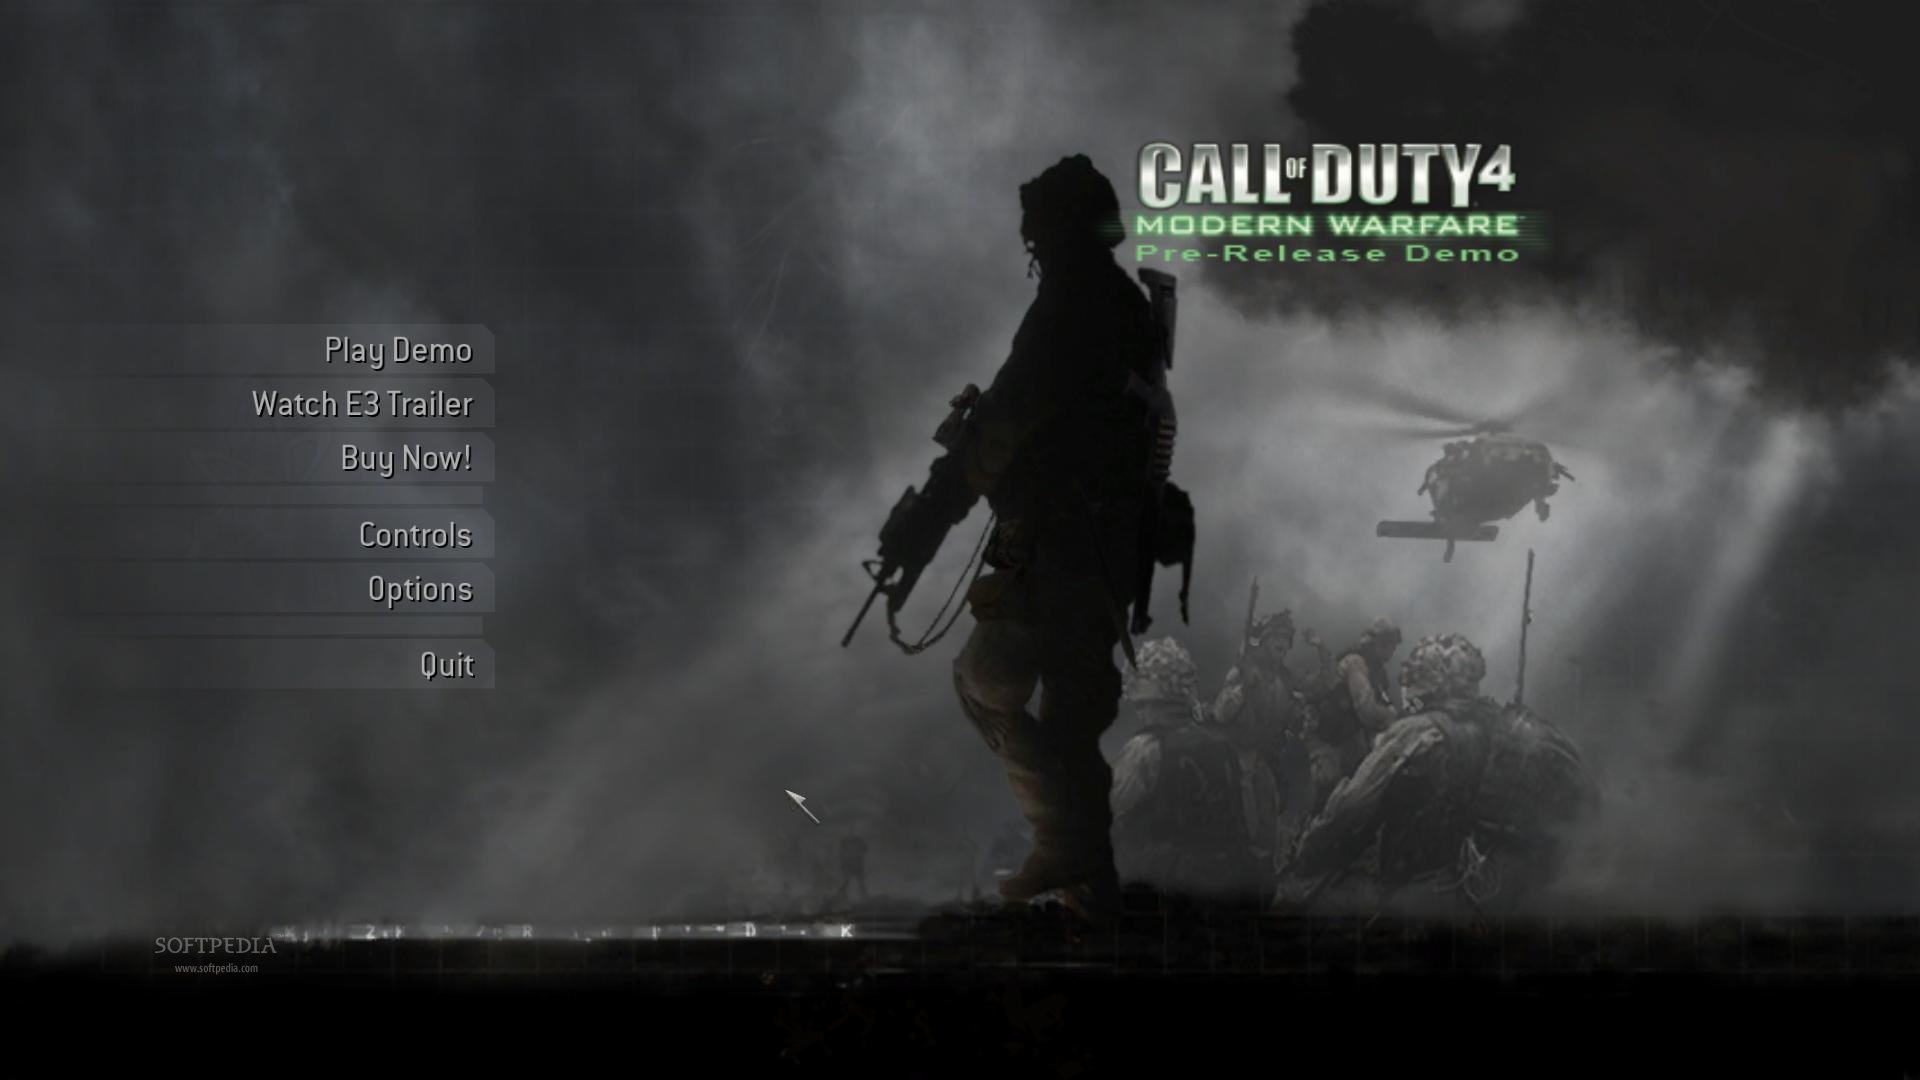 Modern Warfare Call of Duty U.S Marine modern warfare call duty